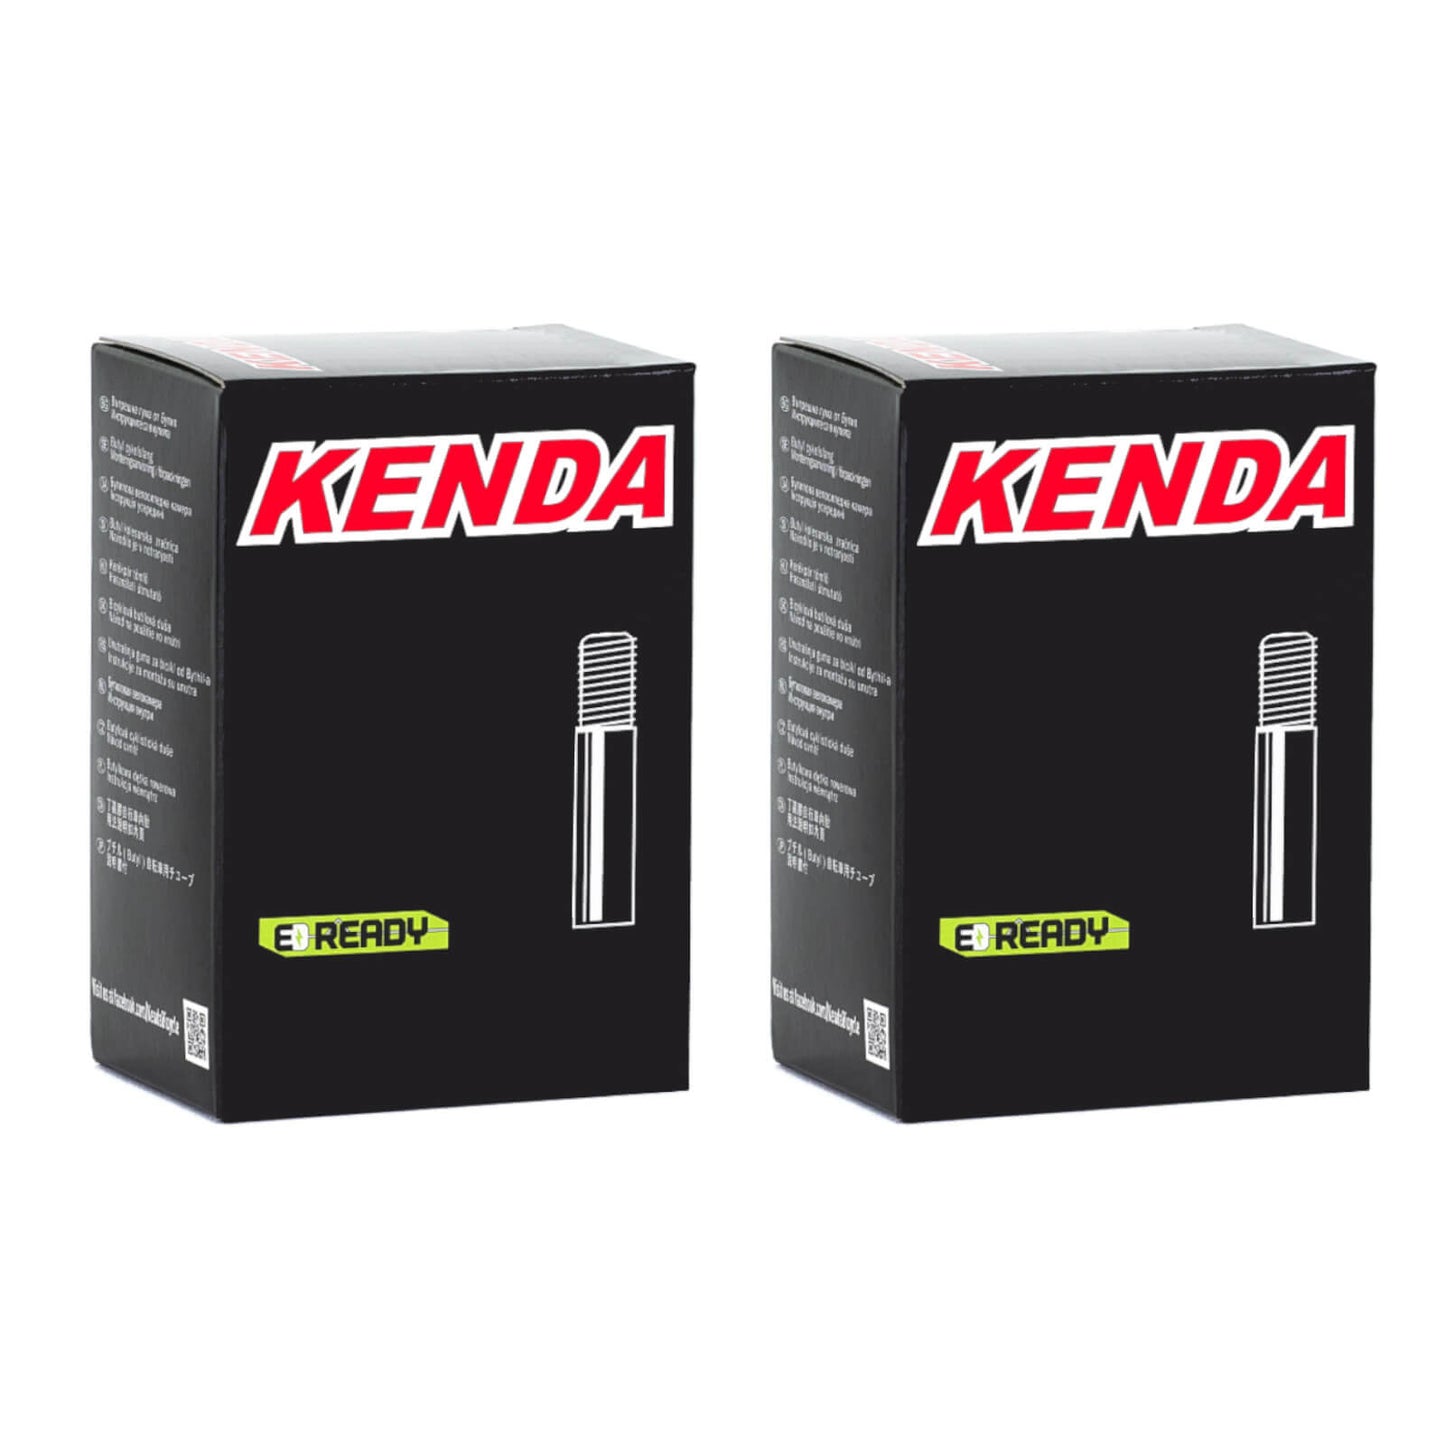 Kenda 26x1.5-1.75" 26 Inch Schrader Valve Bike Inner Tube Pack of 2